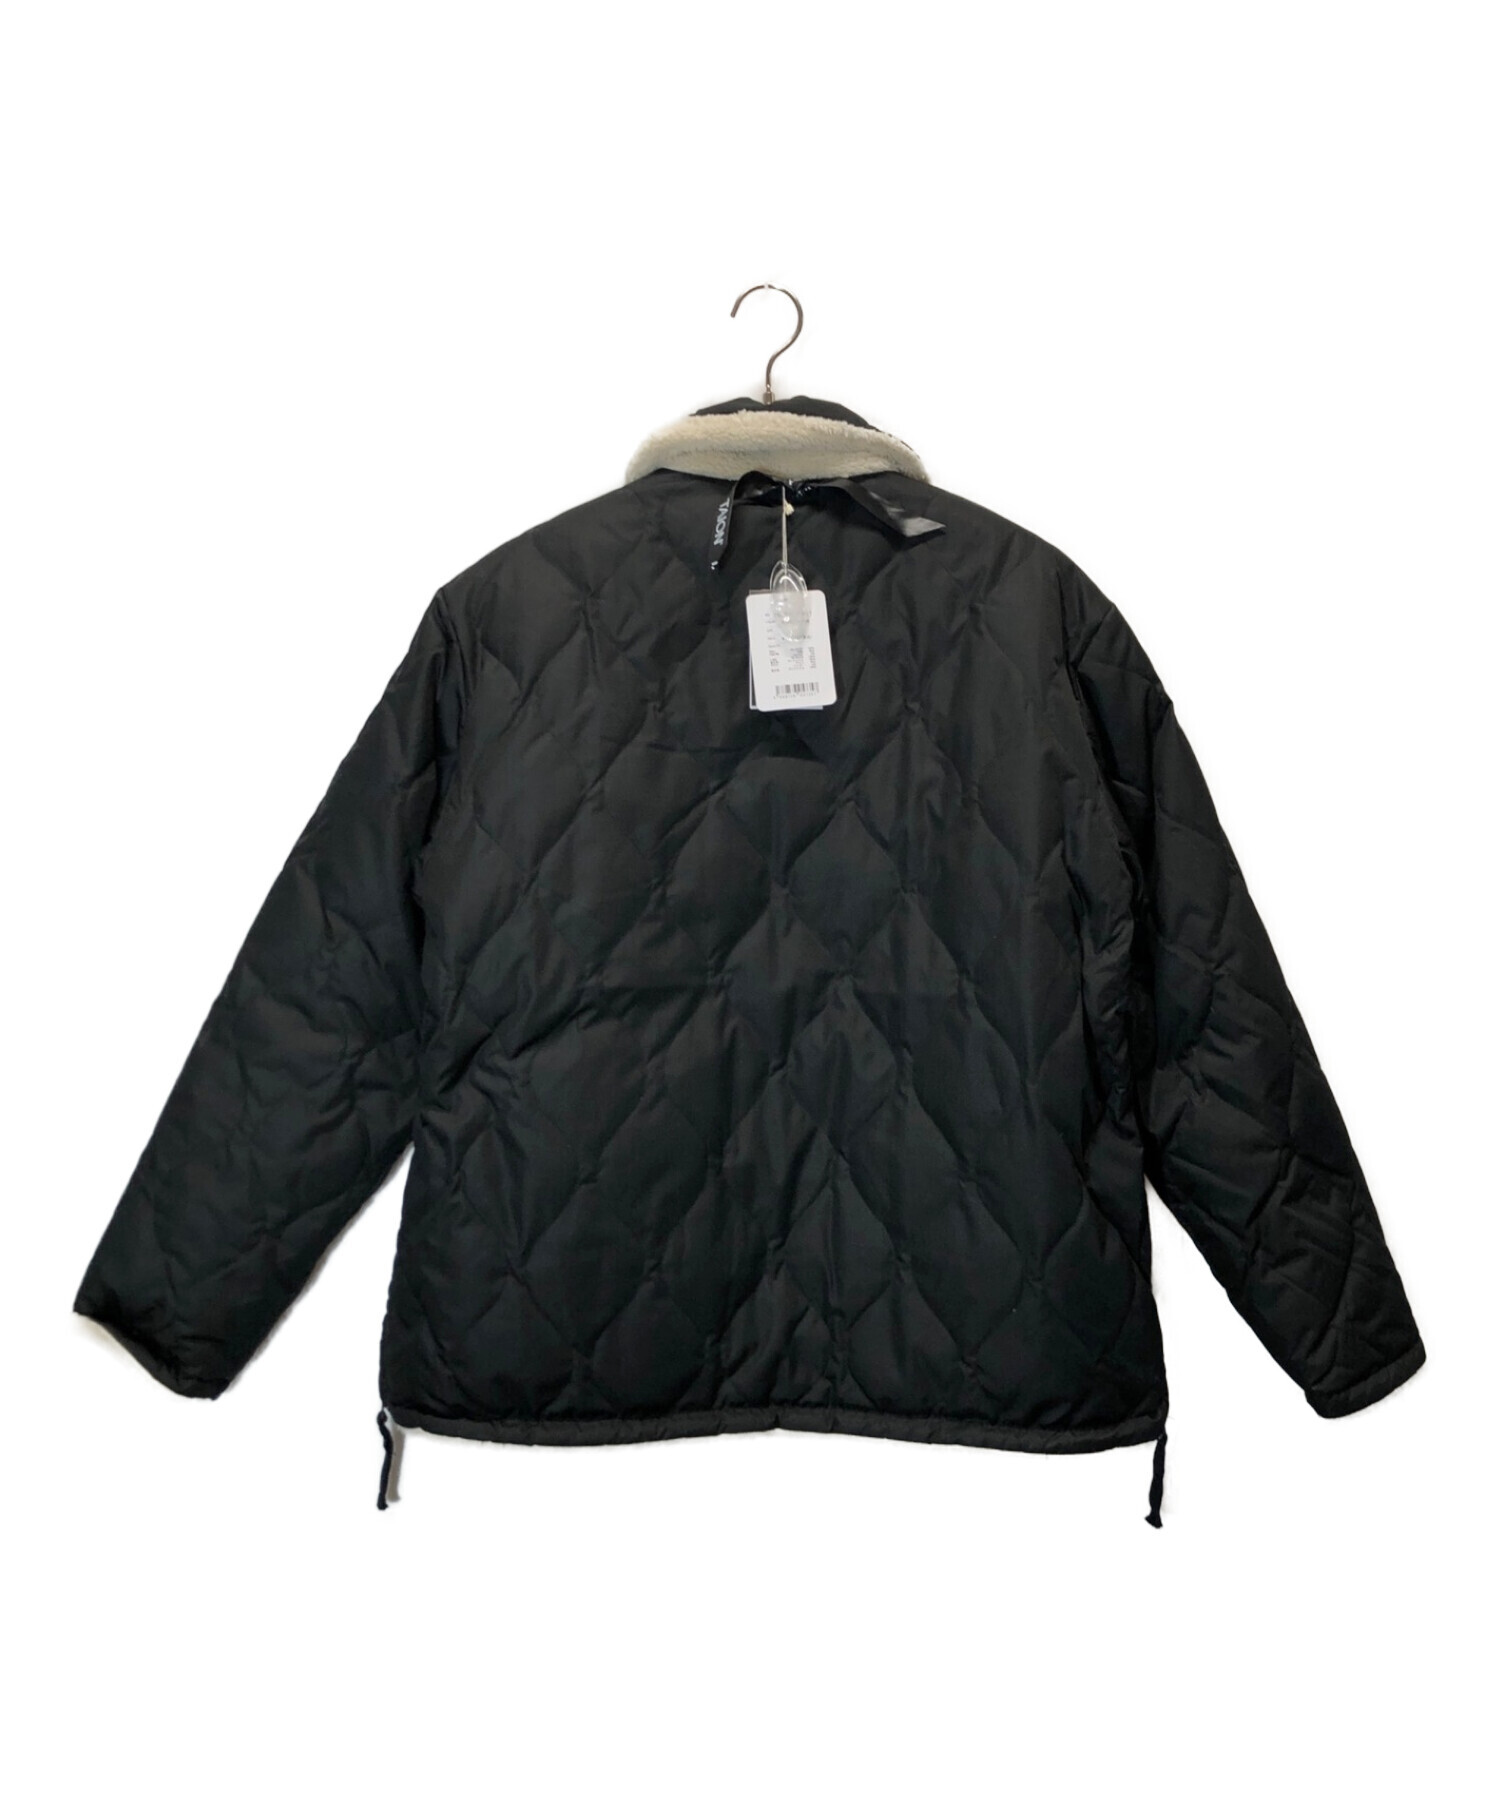 TAION (タイオン) ミリタリーリバーシブルダウンジャケット ブラック サイズ:XL 未使用品